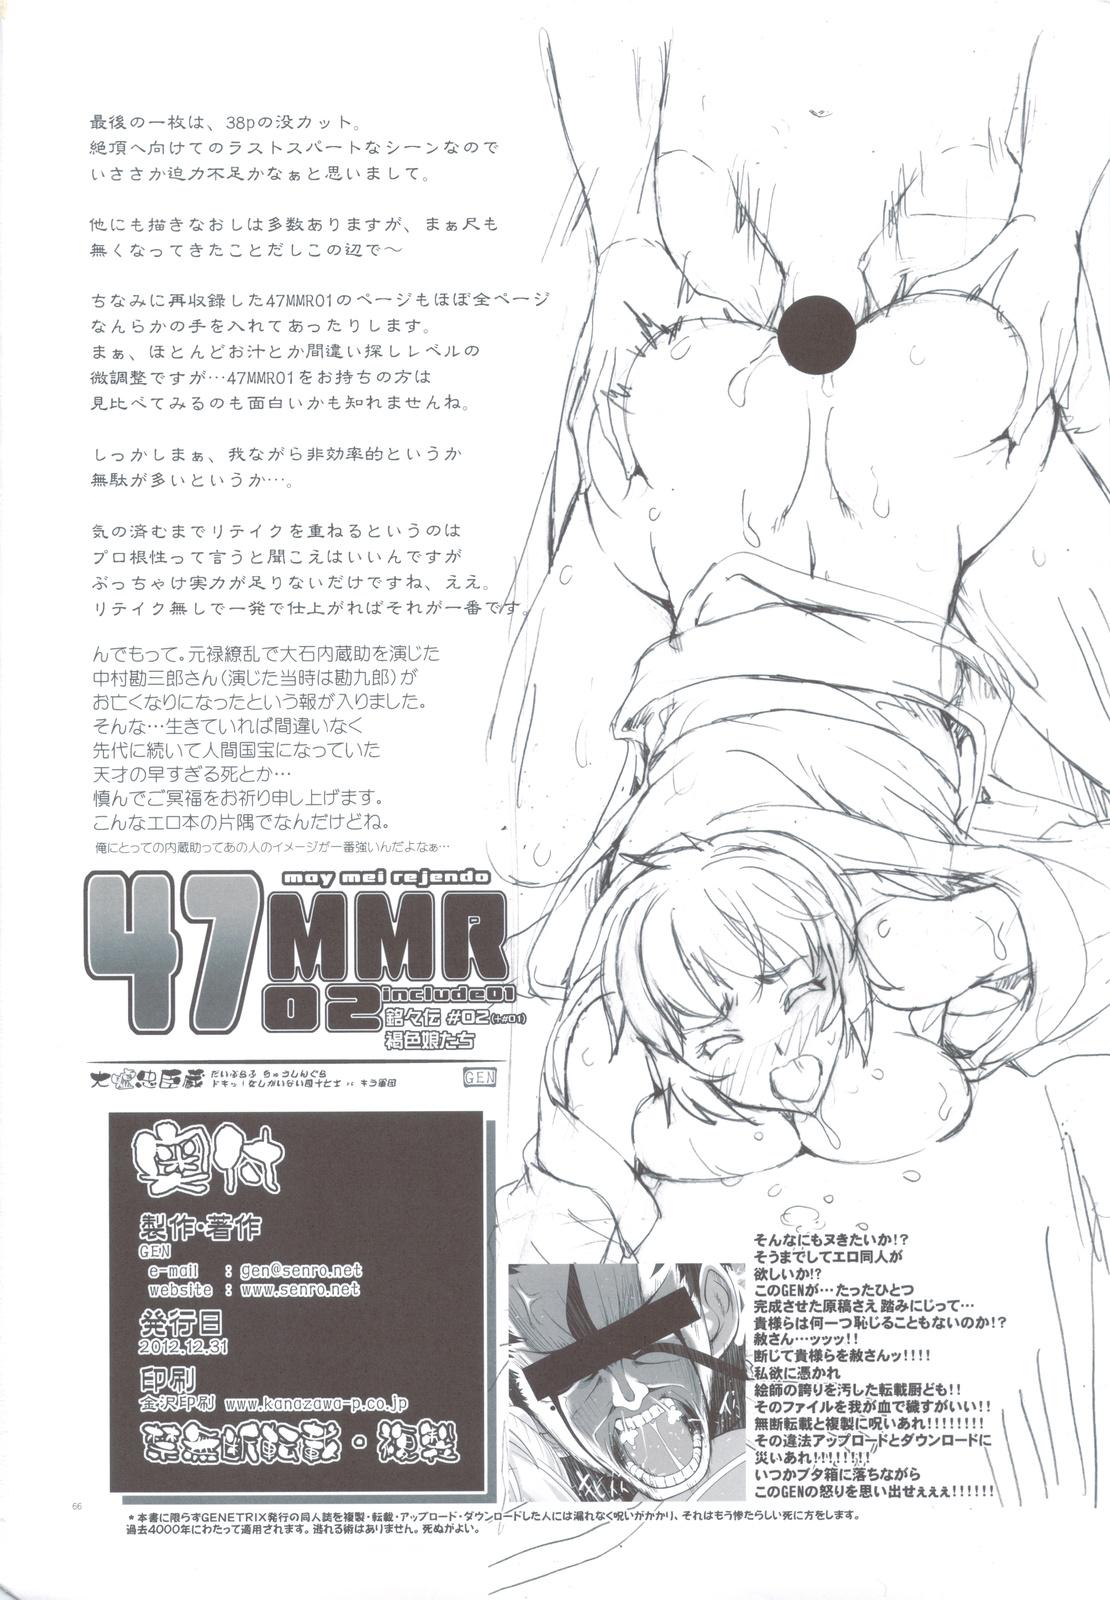 Women Sucking (C83) [GENETRIX (GEN)] 47 MMR02 (include01) Kasshoku Musume-tachi (Original) Bdsm - Page 64